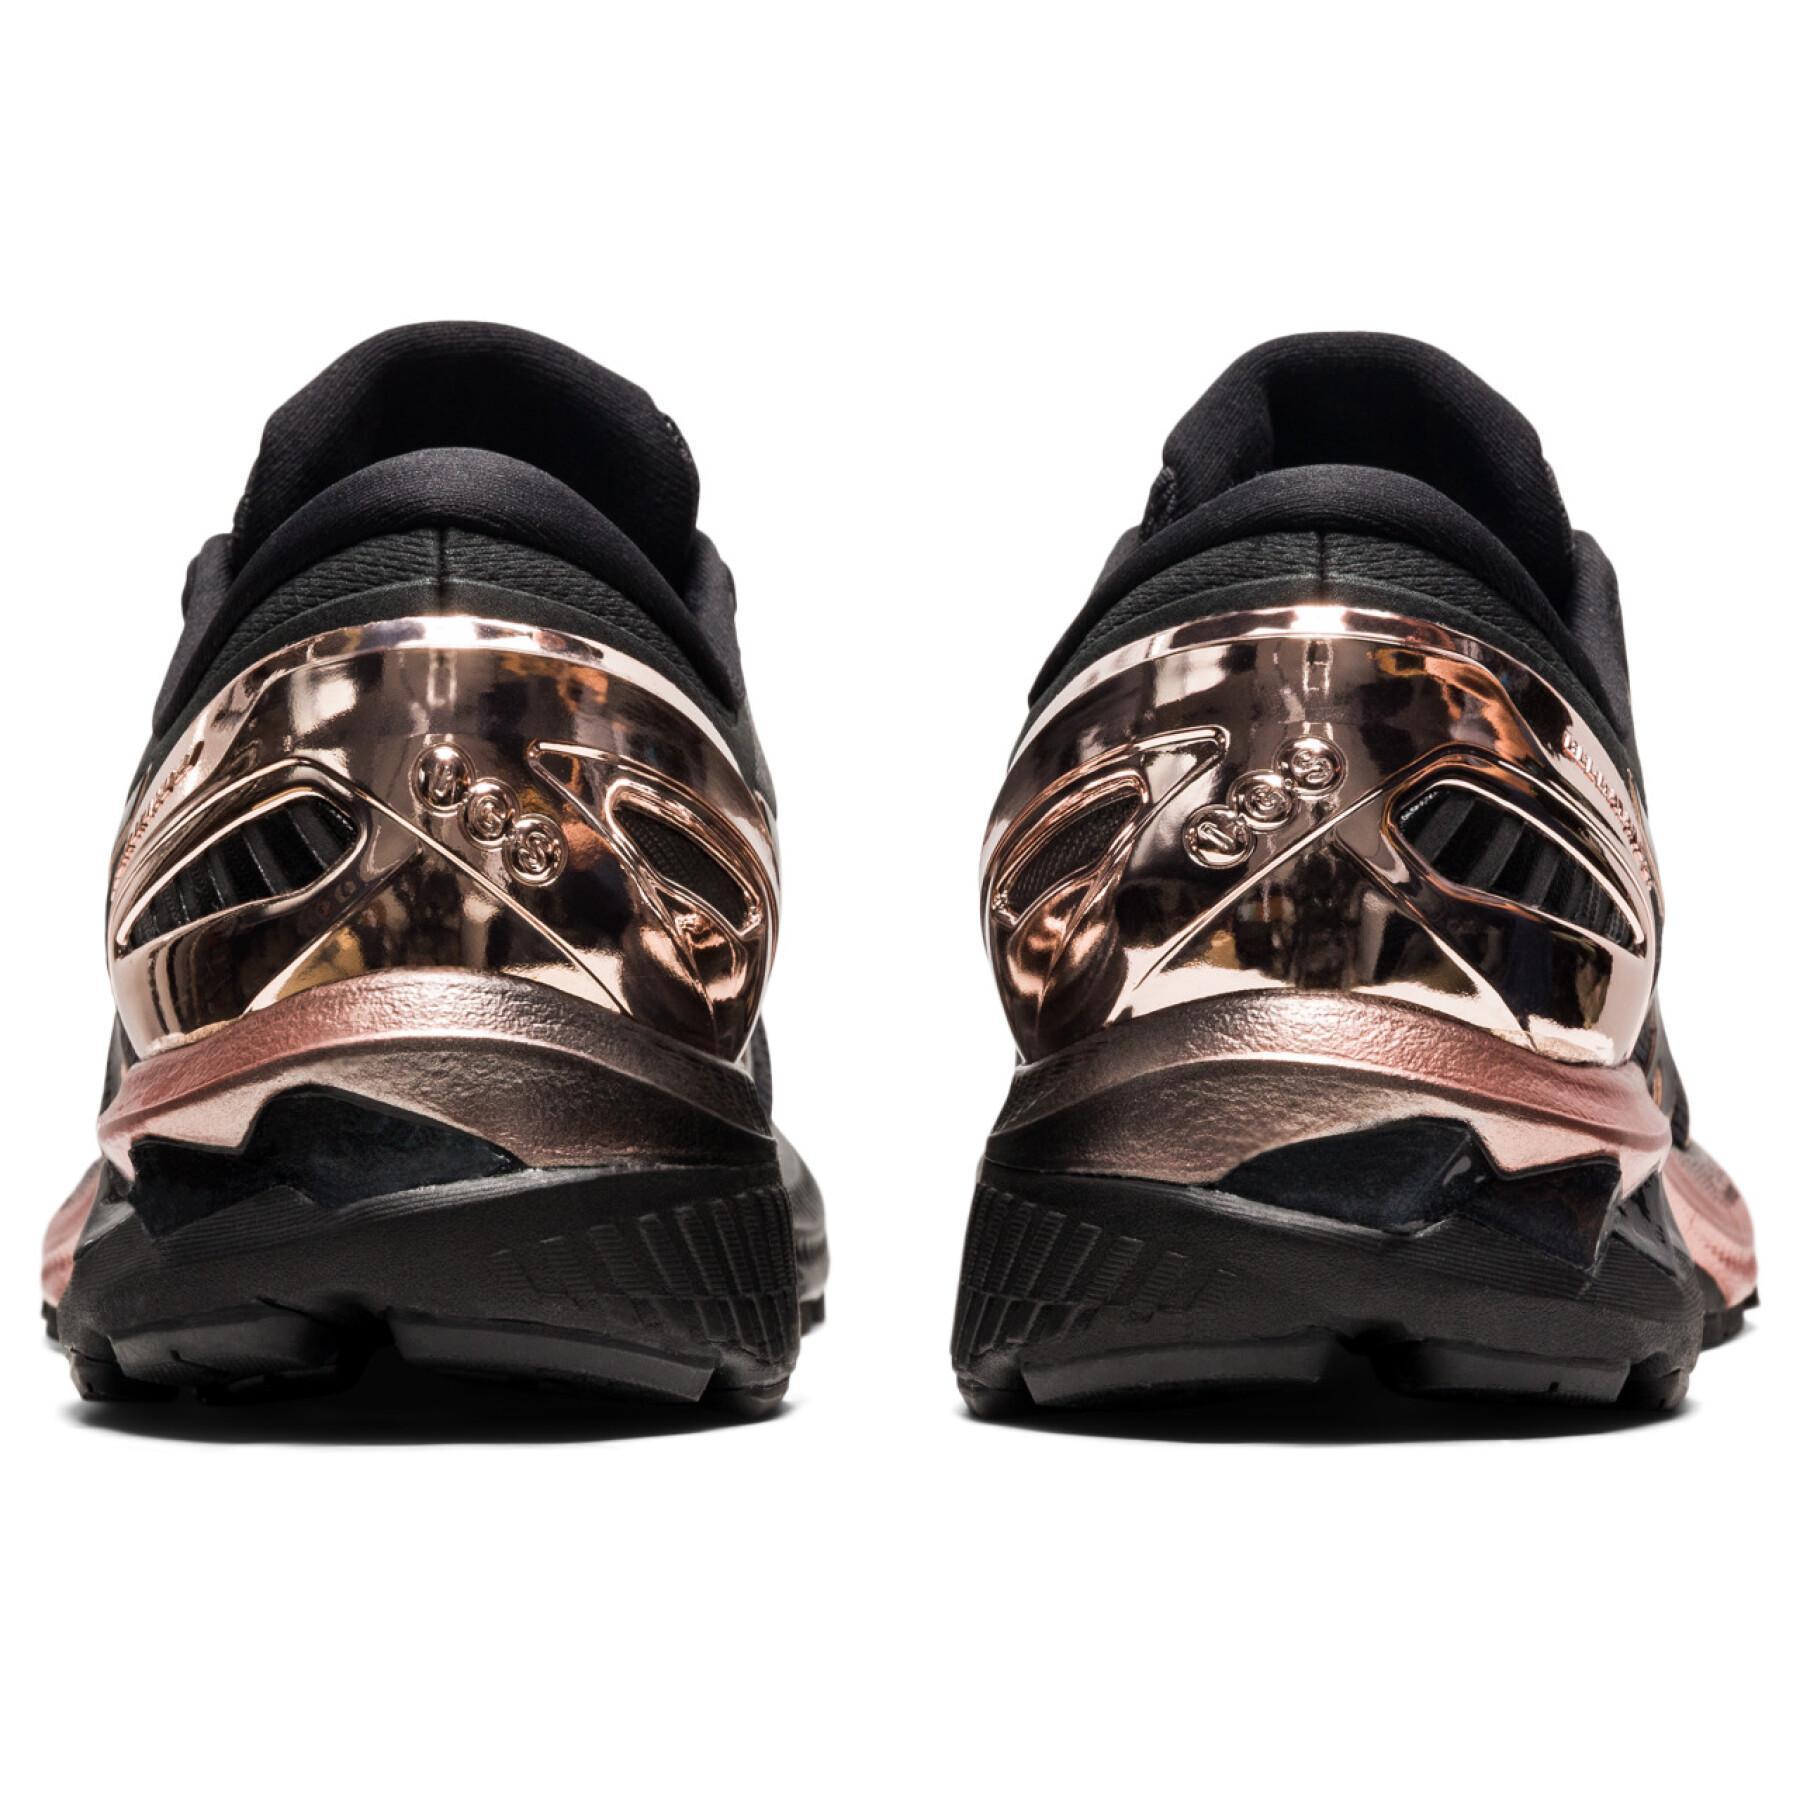 Women's shoes Asics Gel-Kayano 27 Platinum